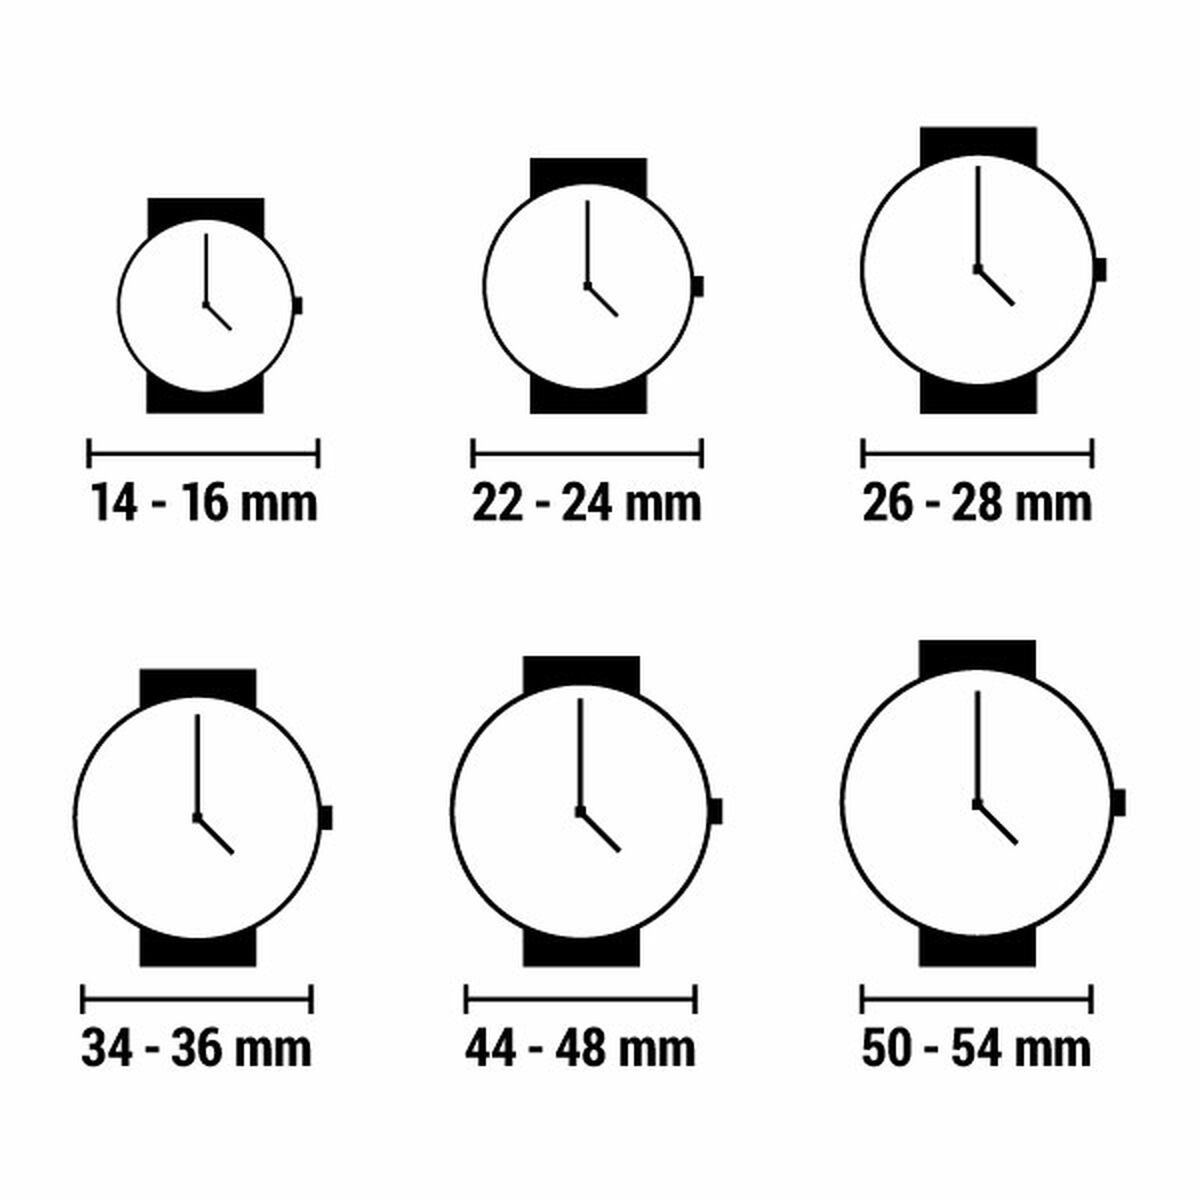 Horloge Dames MVMT 28000187-D (Ø 38 mm)